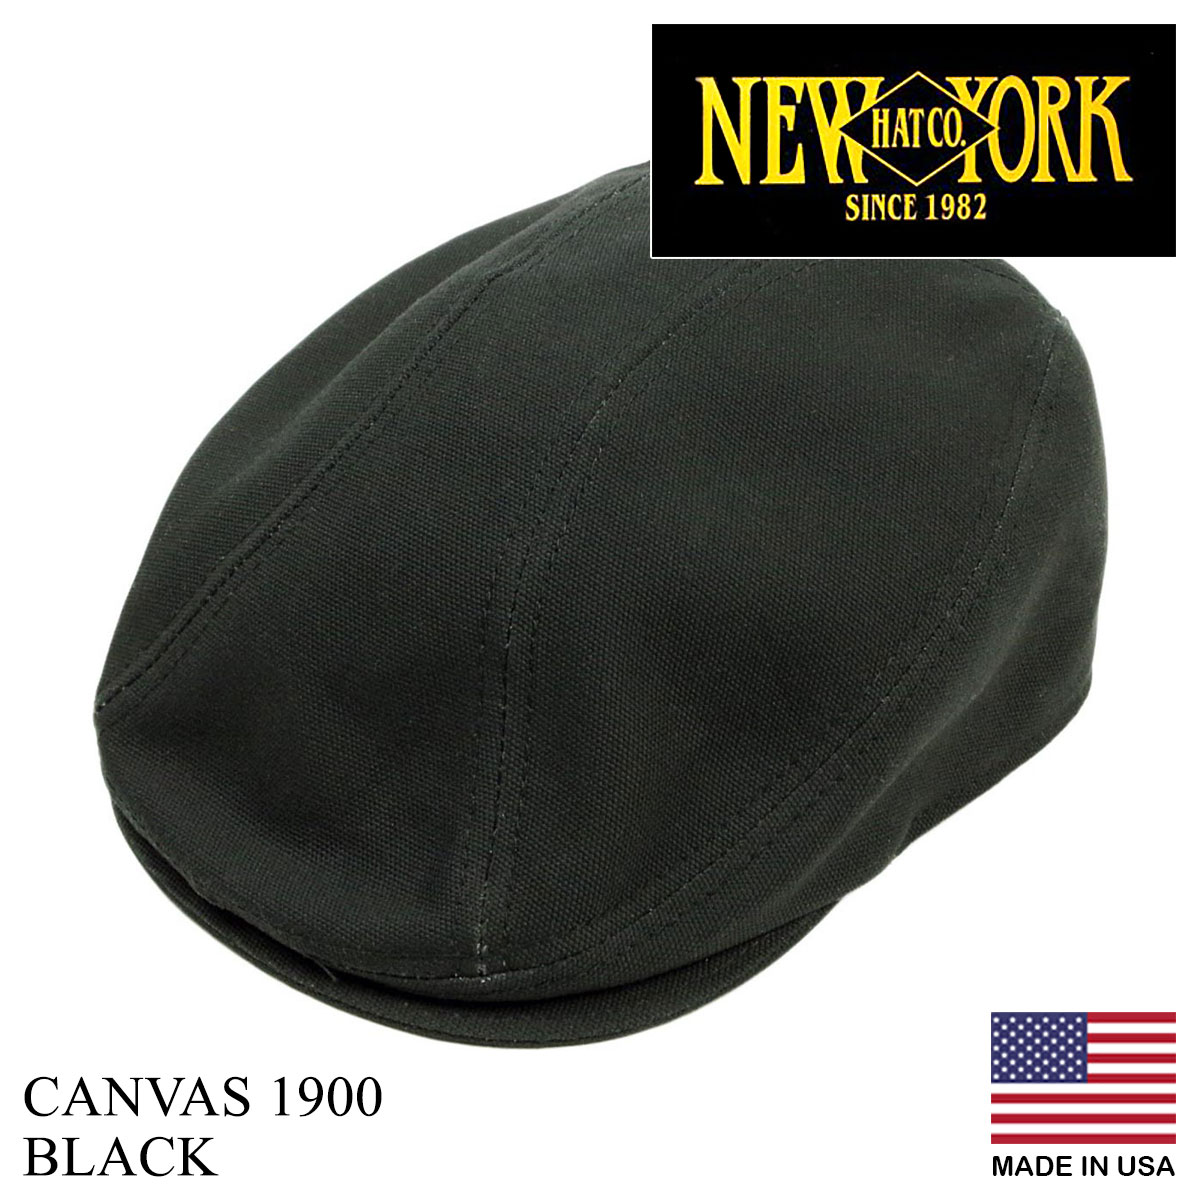 ニューヨークハット NEWYORK HAT ハンチング キャンバス 1900 アメリカ製 米国製 C...